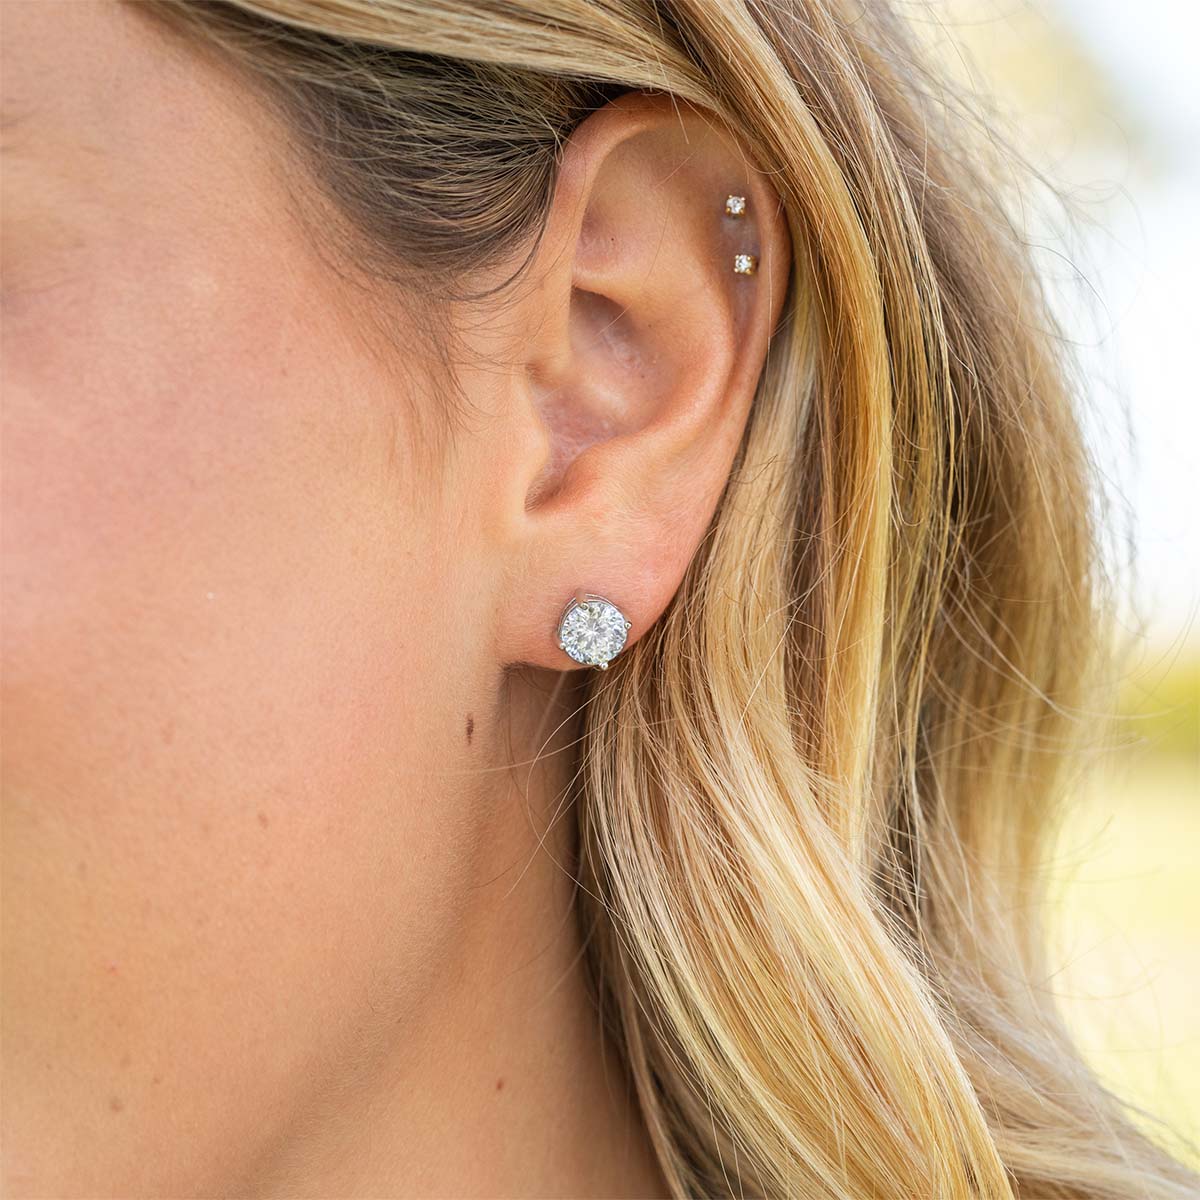 Womens cute silver stud earrings